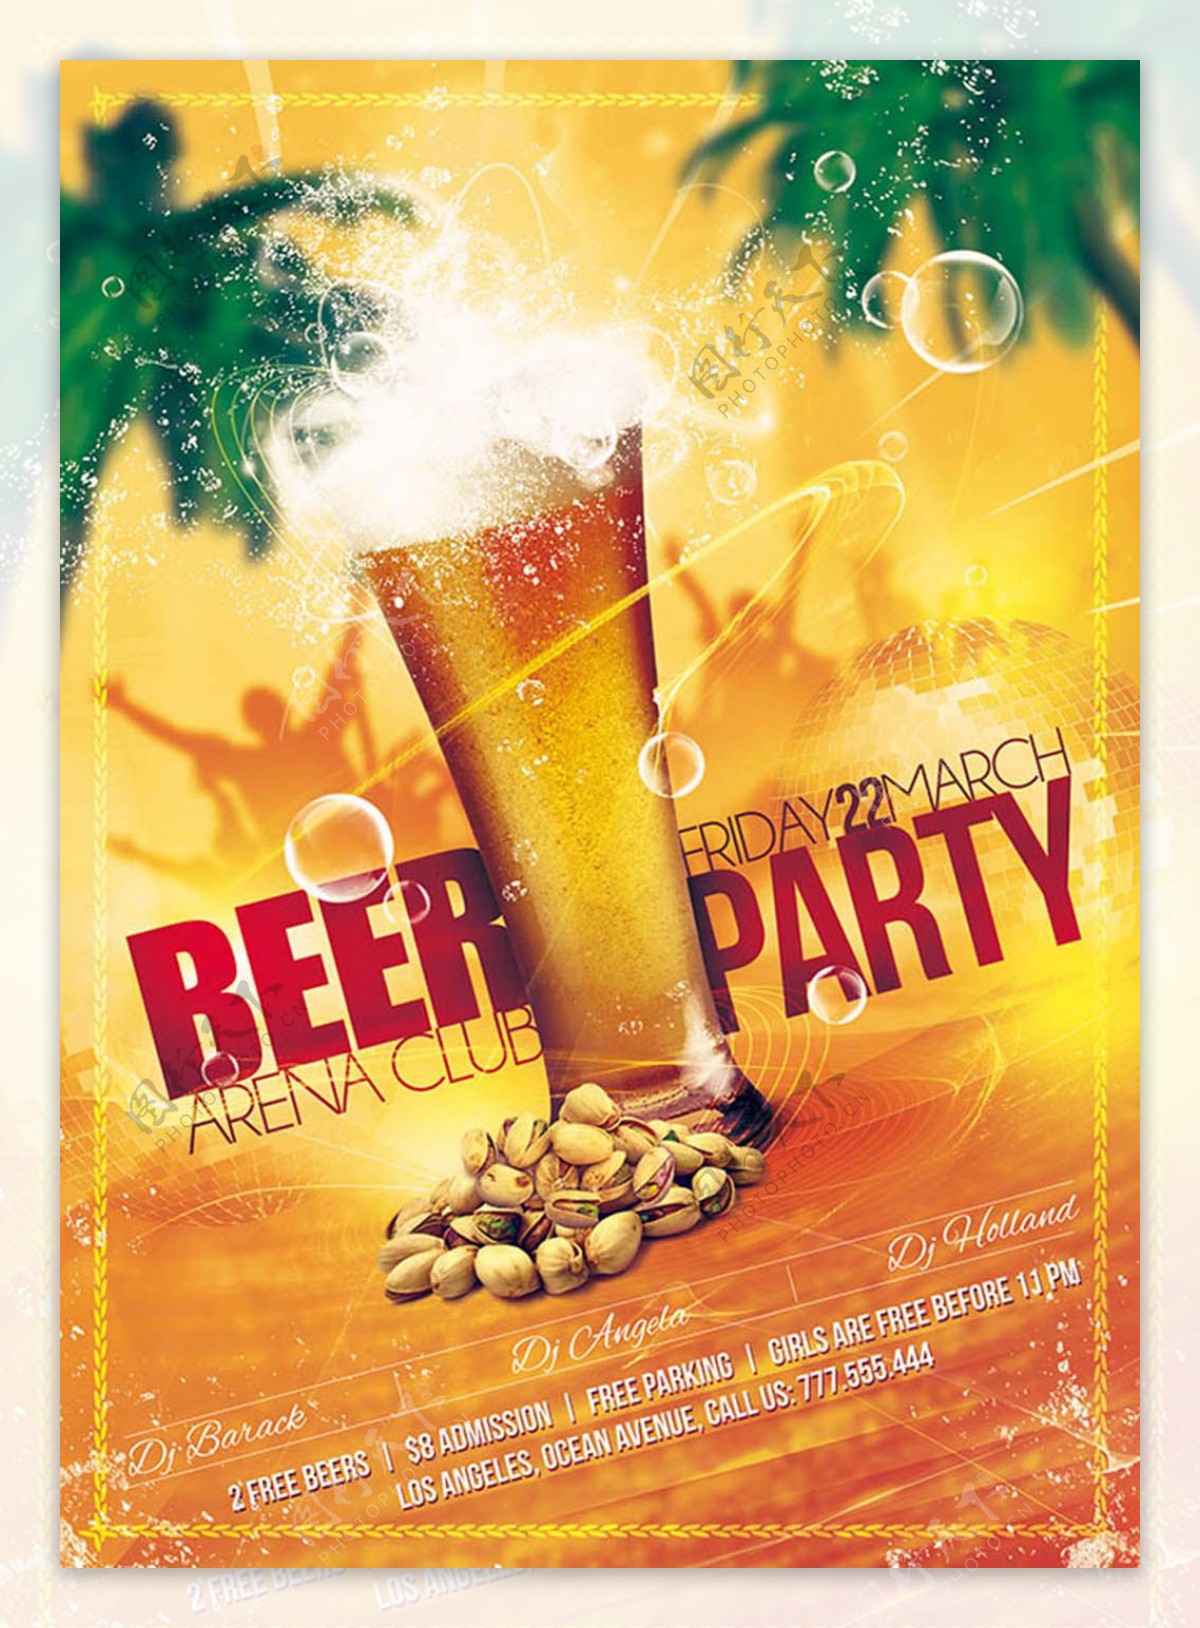 酒吧啤酒派对主题海报设计